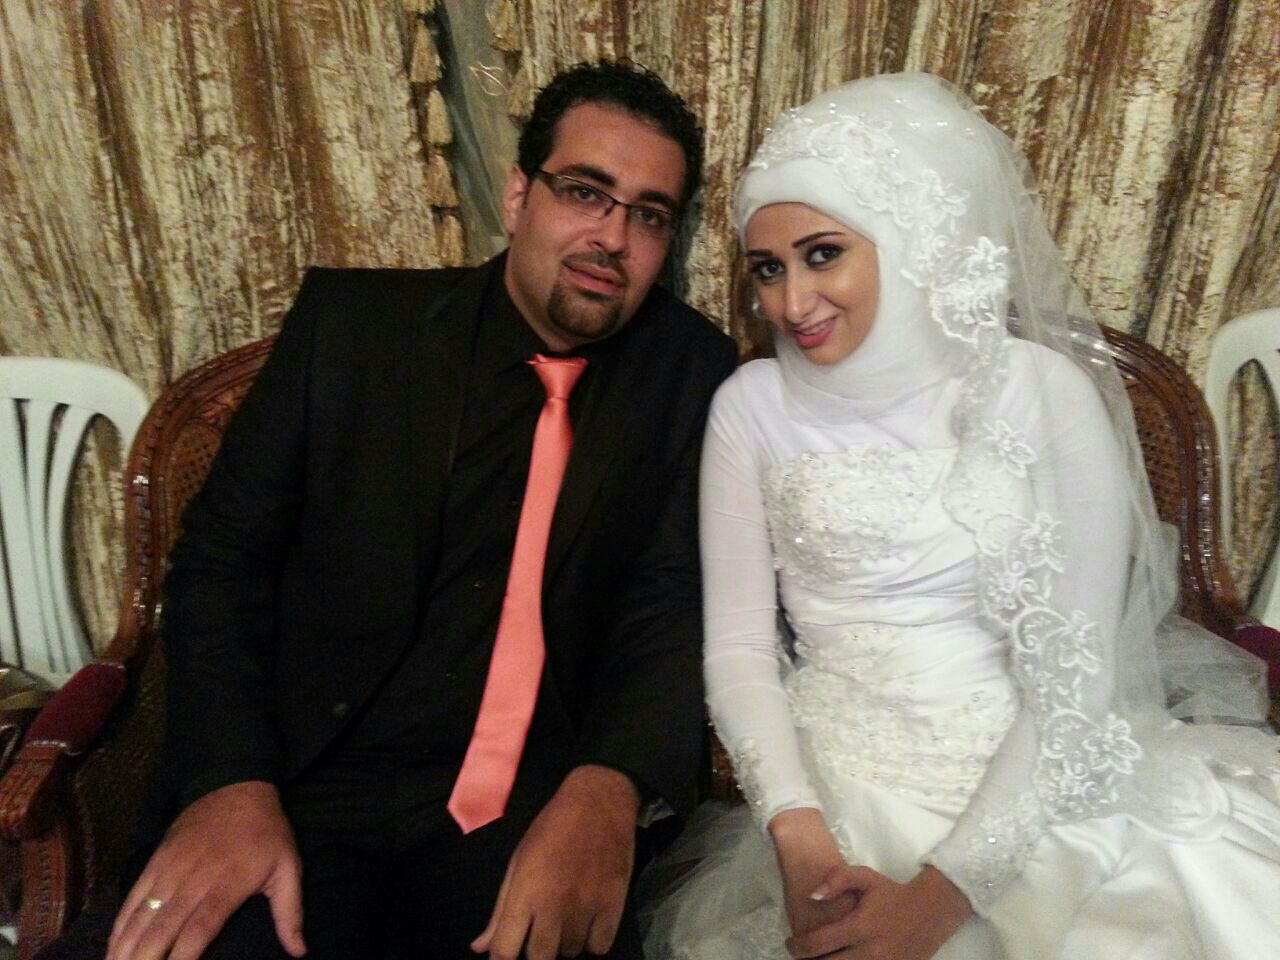 حفل زفاف الشاب حسين ابراهيم نحلة والآنسة سارة وفيق نحلة